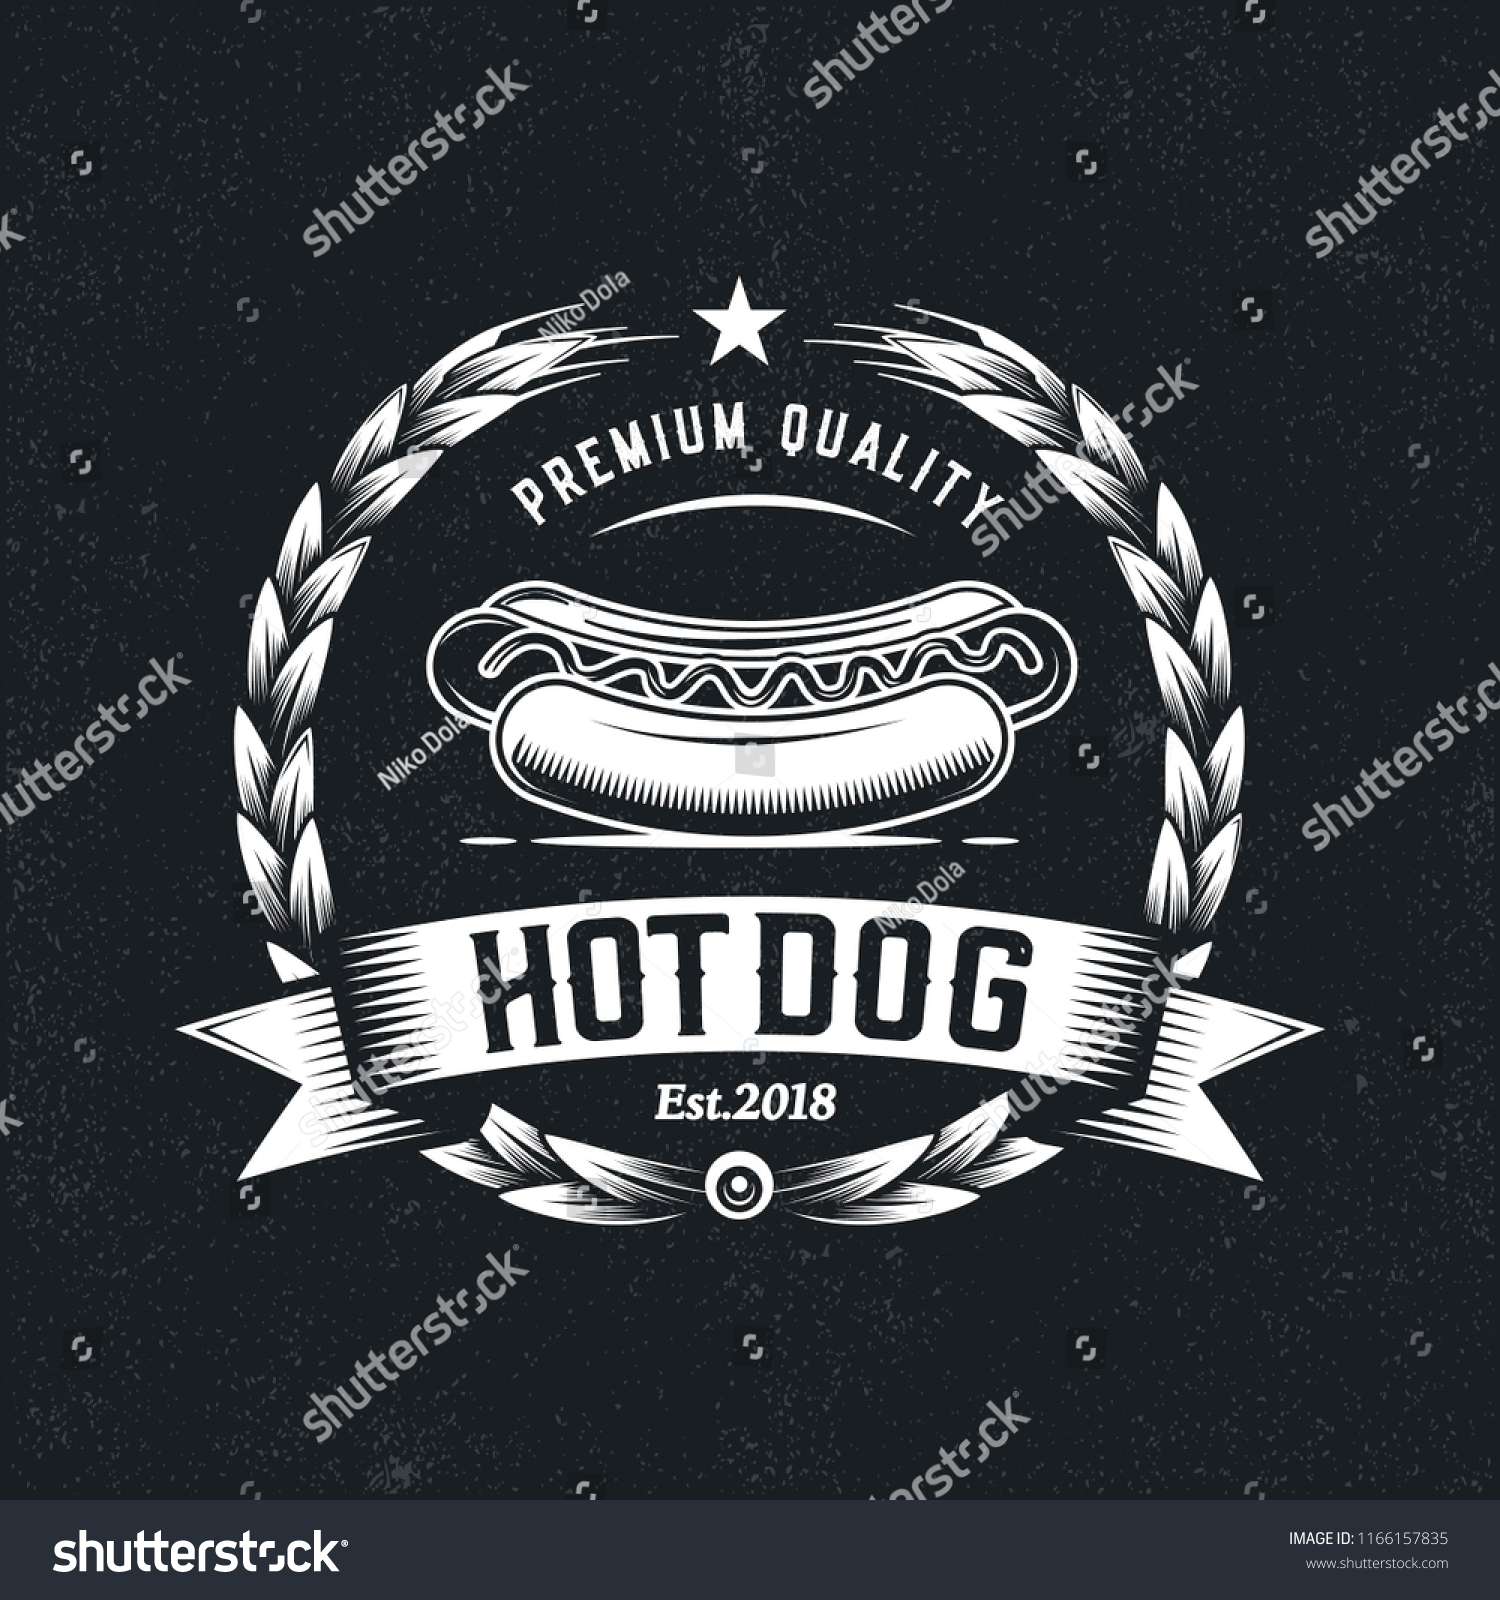 SVG of Vintage,Hipster Hot Dog emblem logo. Illustration of a rustic, classic Hot dog badge svg